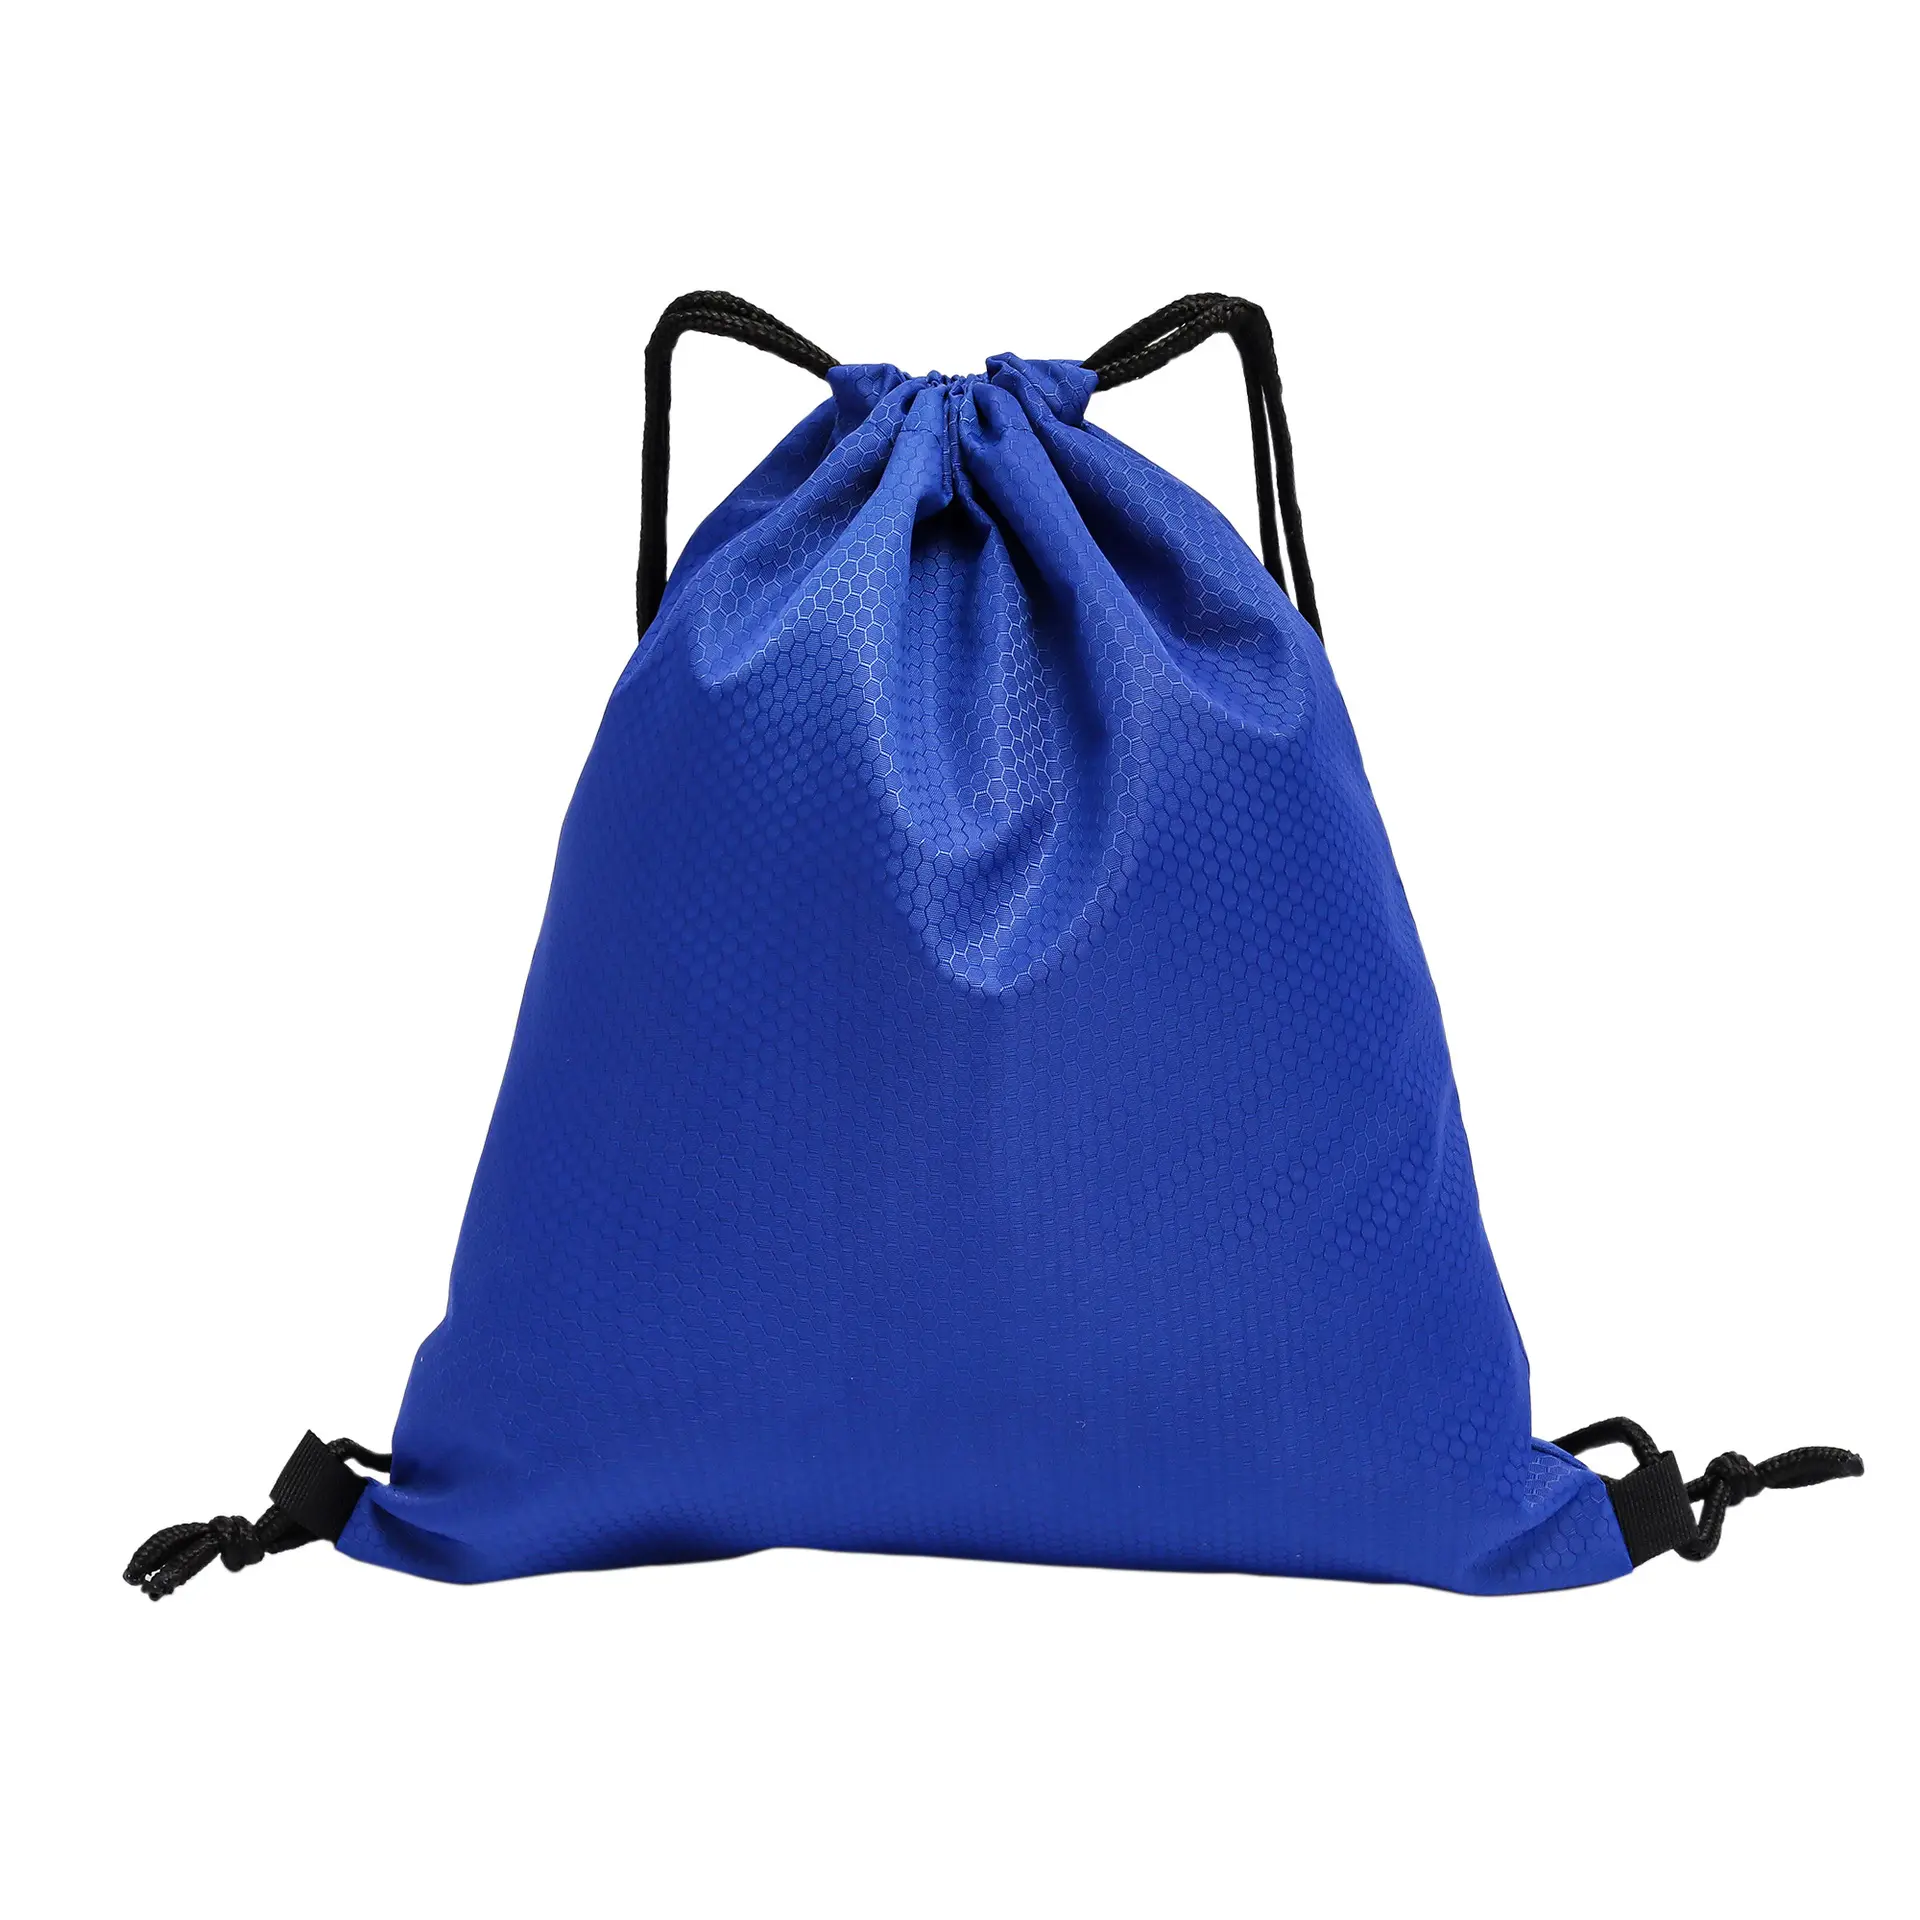 Großhandel Polyester Sport Nylon Seil Taschen Rucksack Schnur Wasserdichte Outdoor Kordel zug Taschen